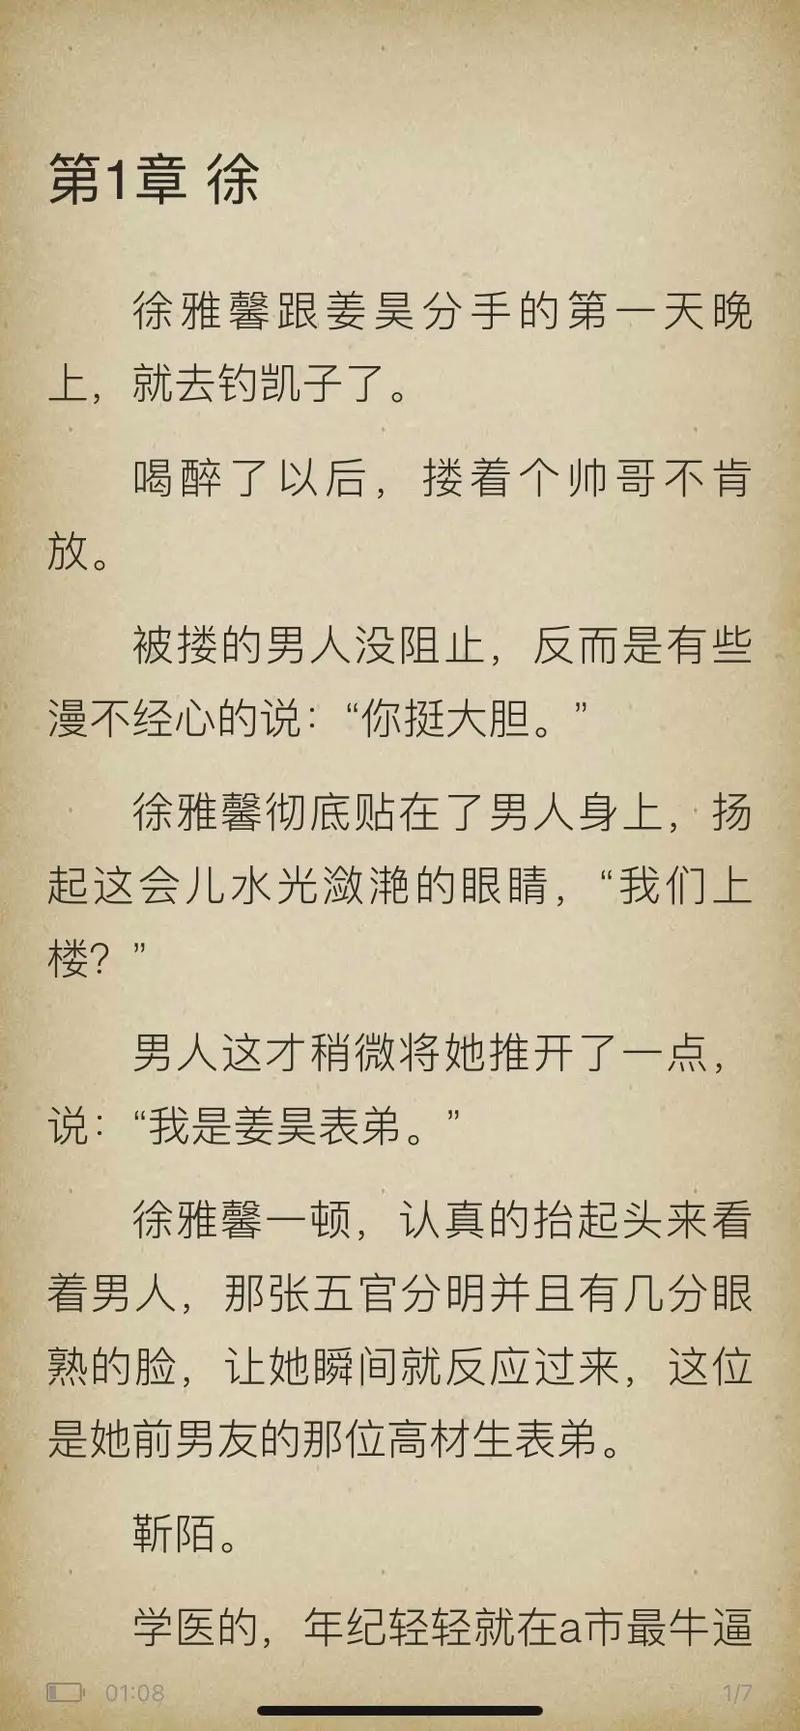 《徐雅馨靳陌姜昊》小说全文后续在线阅读.